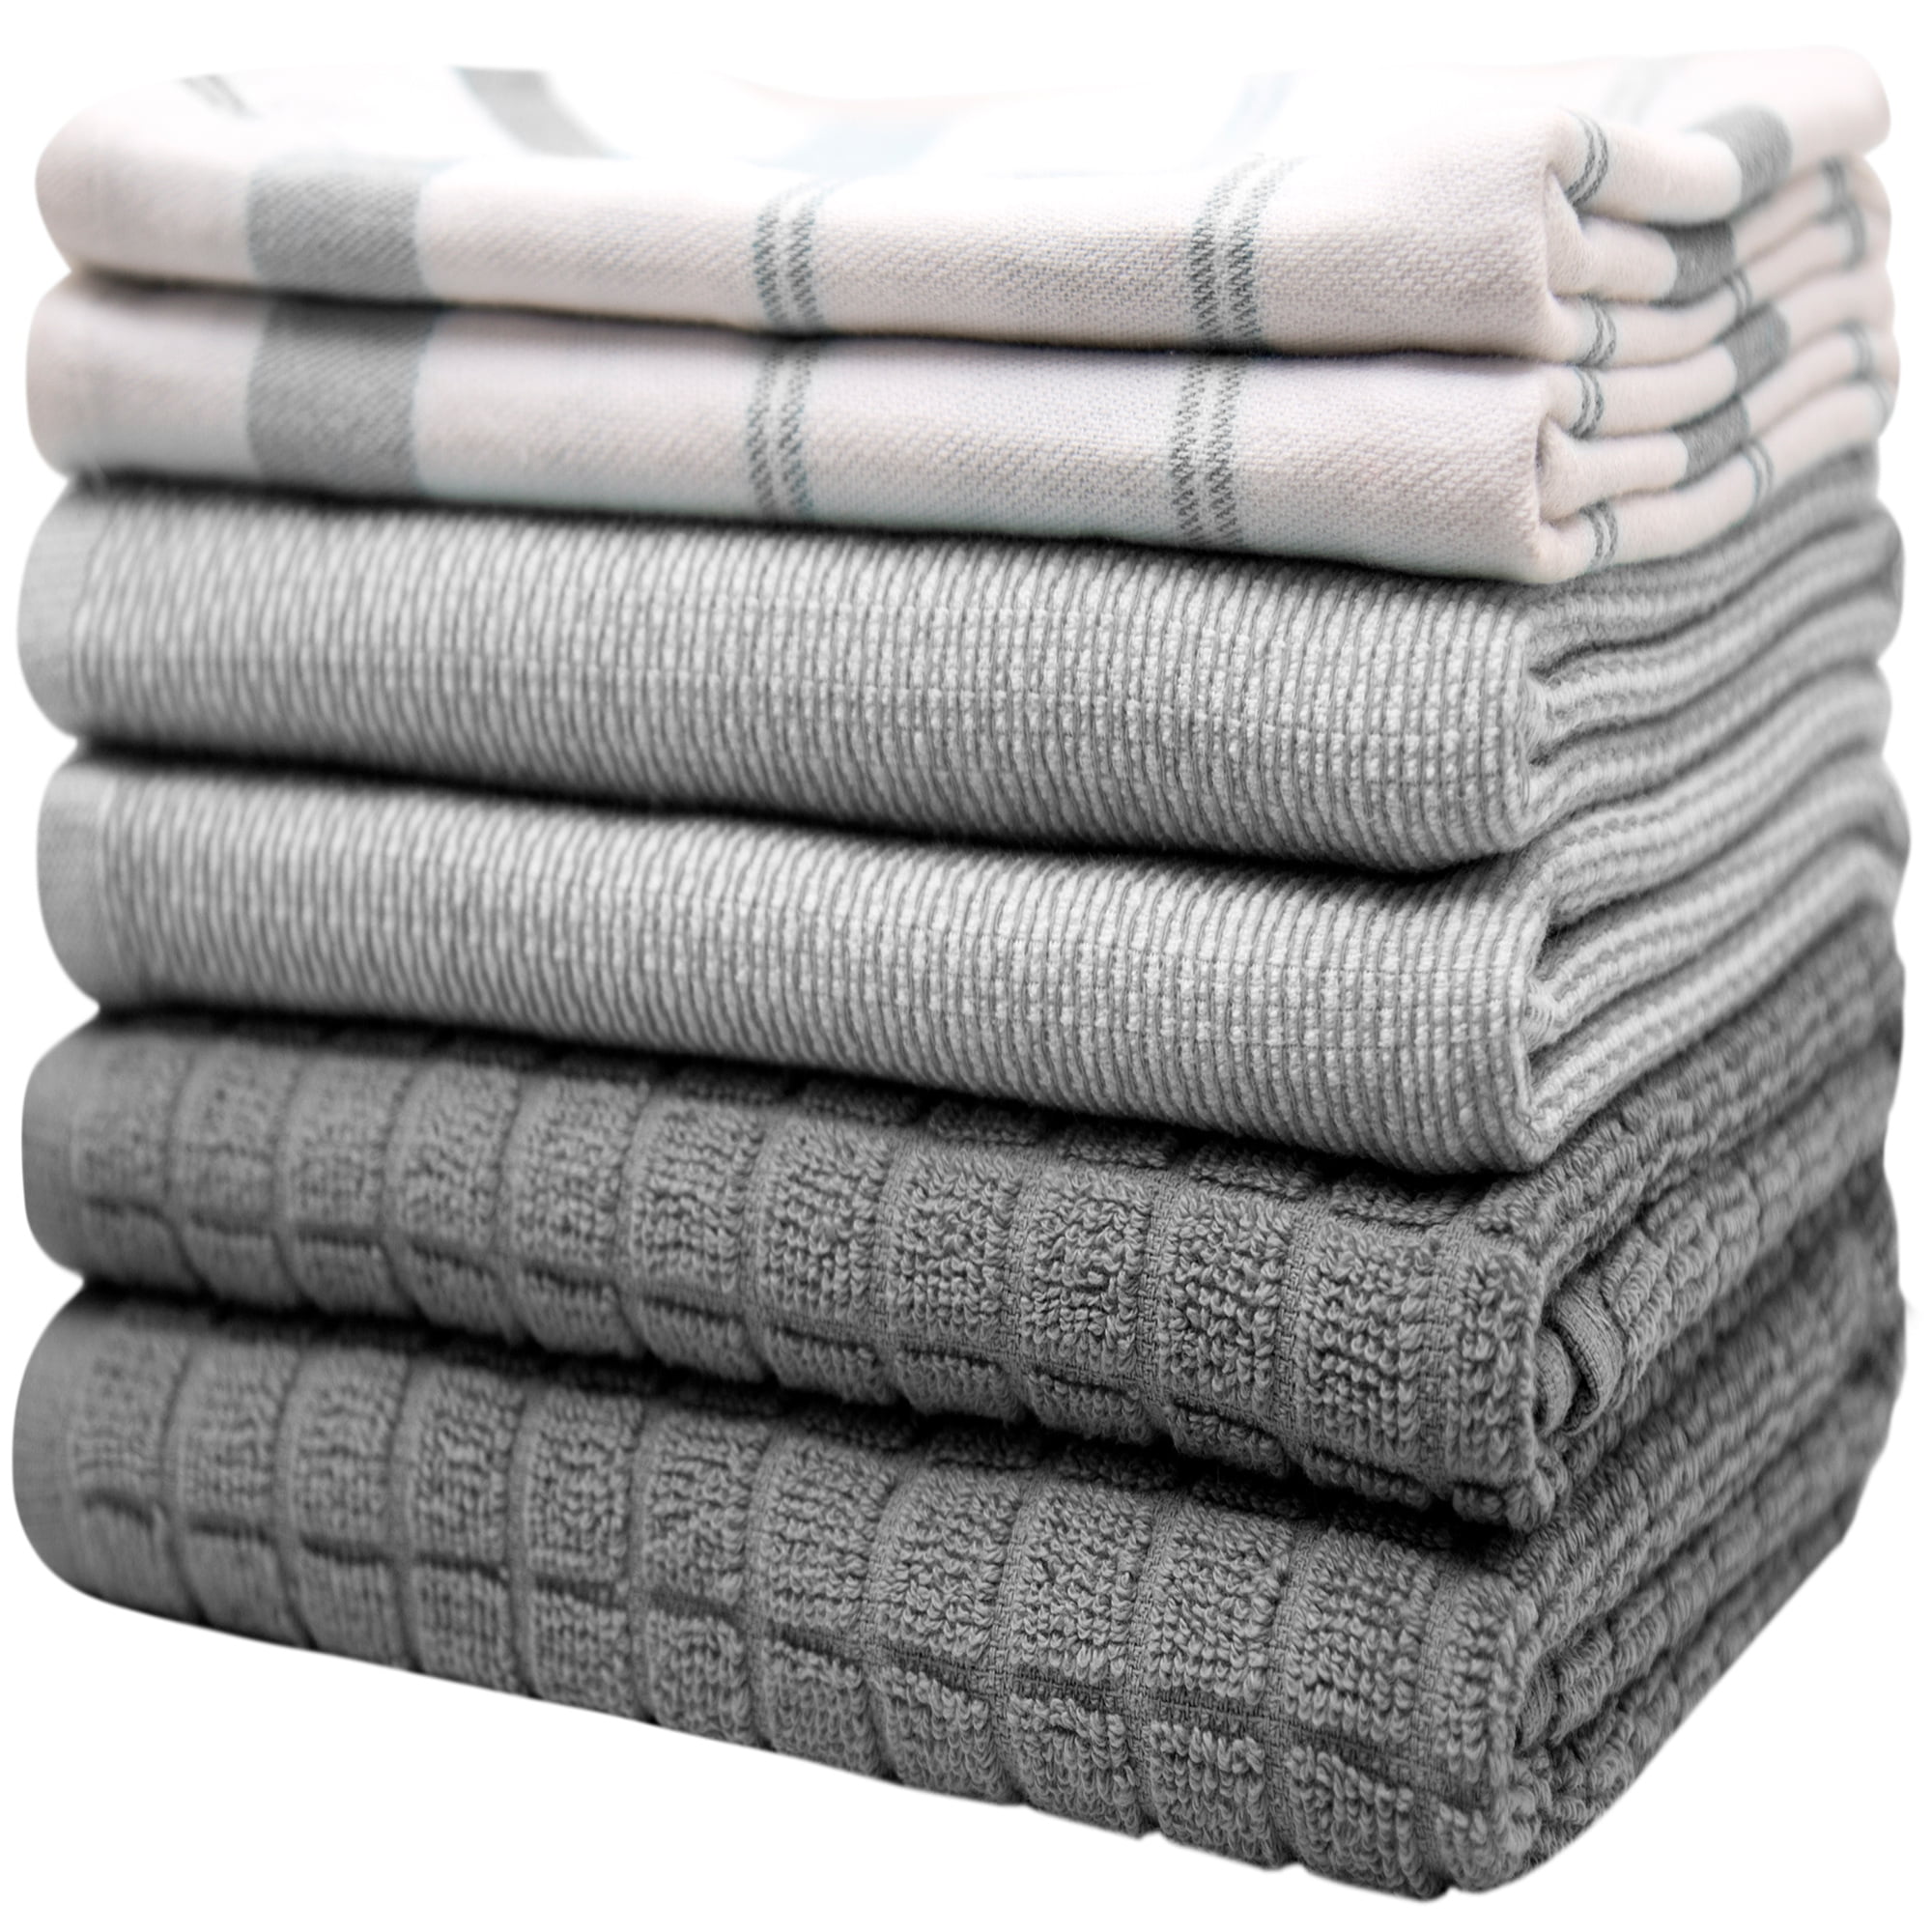 Bumble Premium Large Cotton Kitchen Towels, 16”x 28”